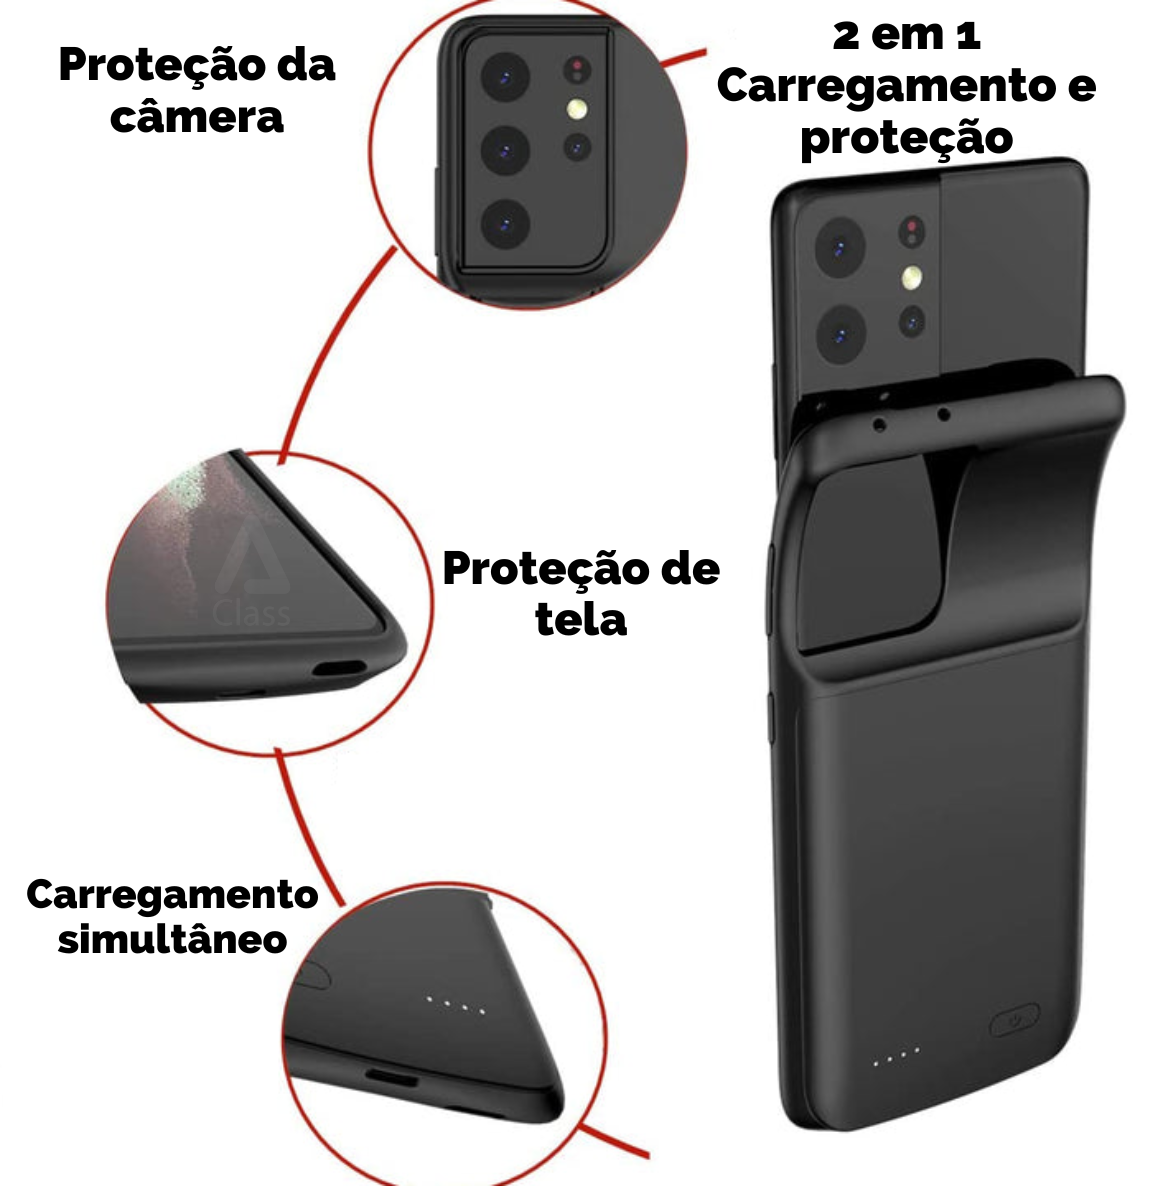 Capinha Samsung